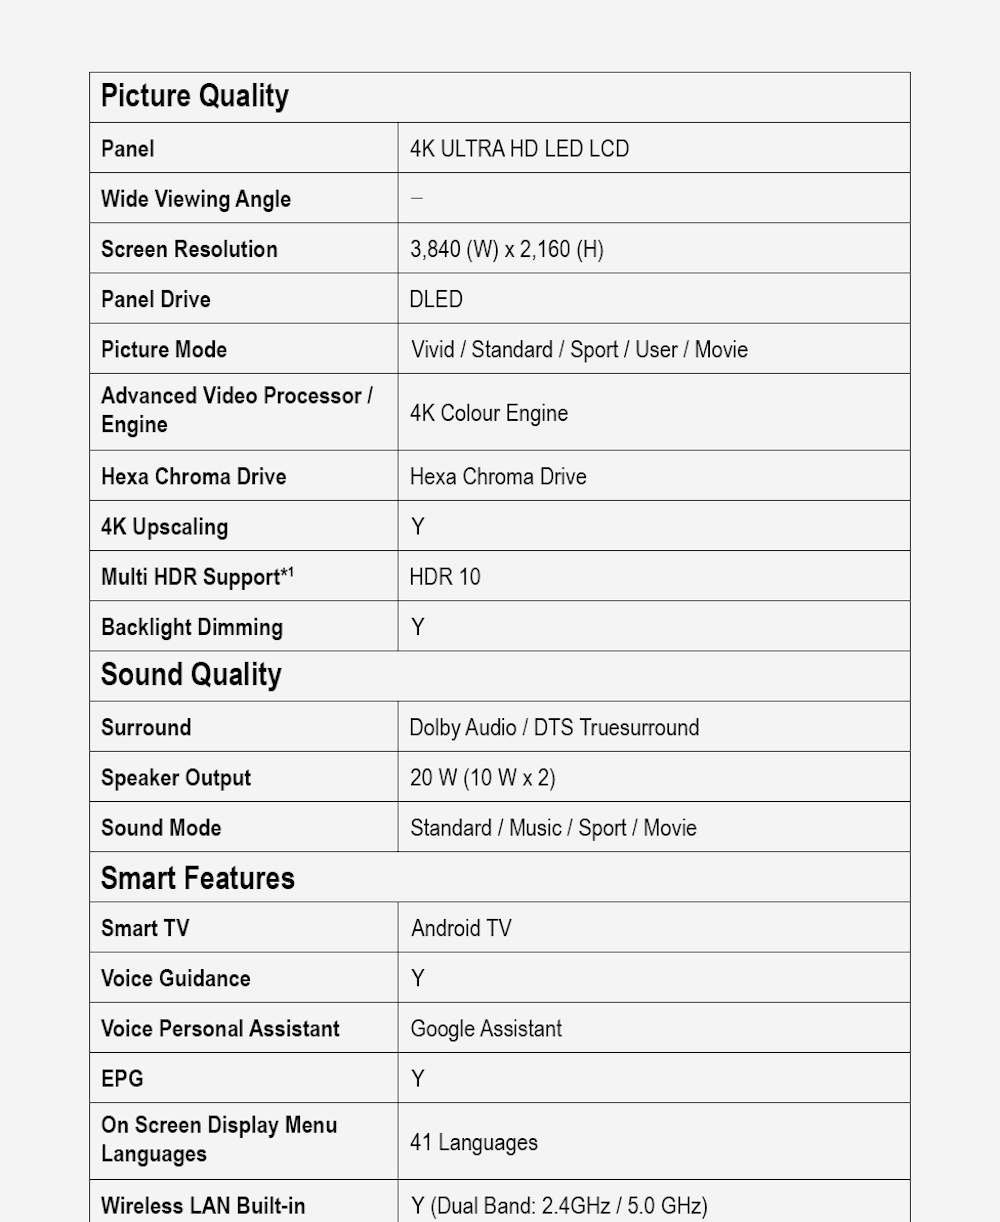 มุมมองเพิ่มเติมของสินค้า Panasonic LED TV TH-50HX720T 4K TV ทีวี 50 นิ้ว Android TV Google Assistant HDR10 Chromecast แอนดรอยด์ทีวี